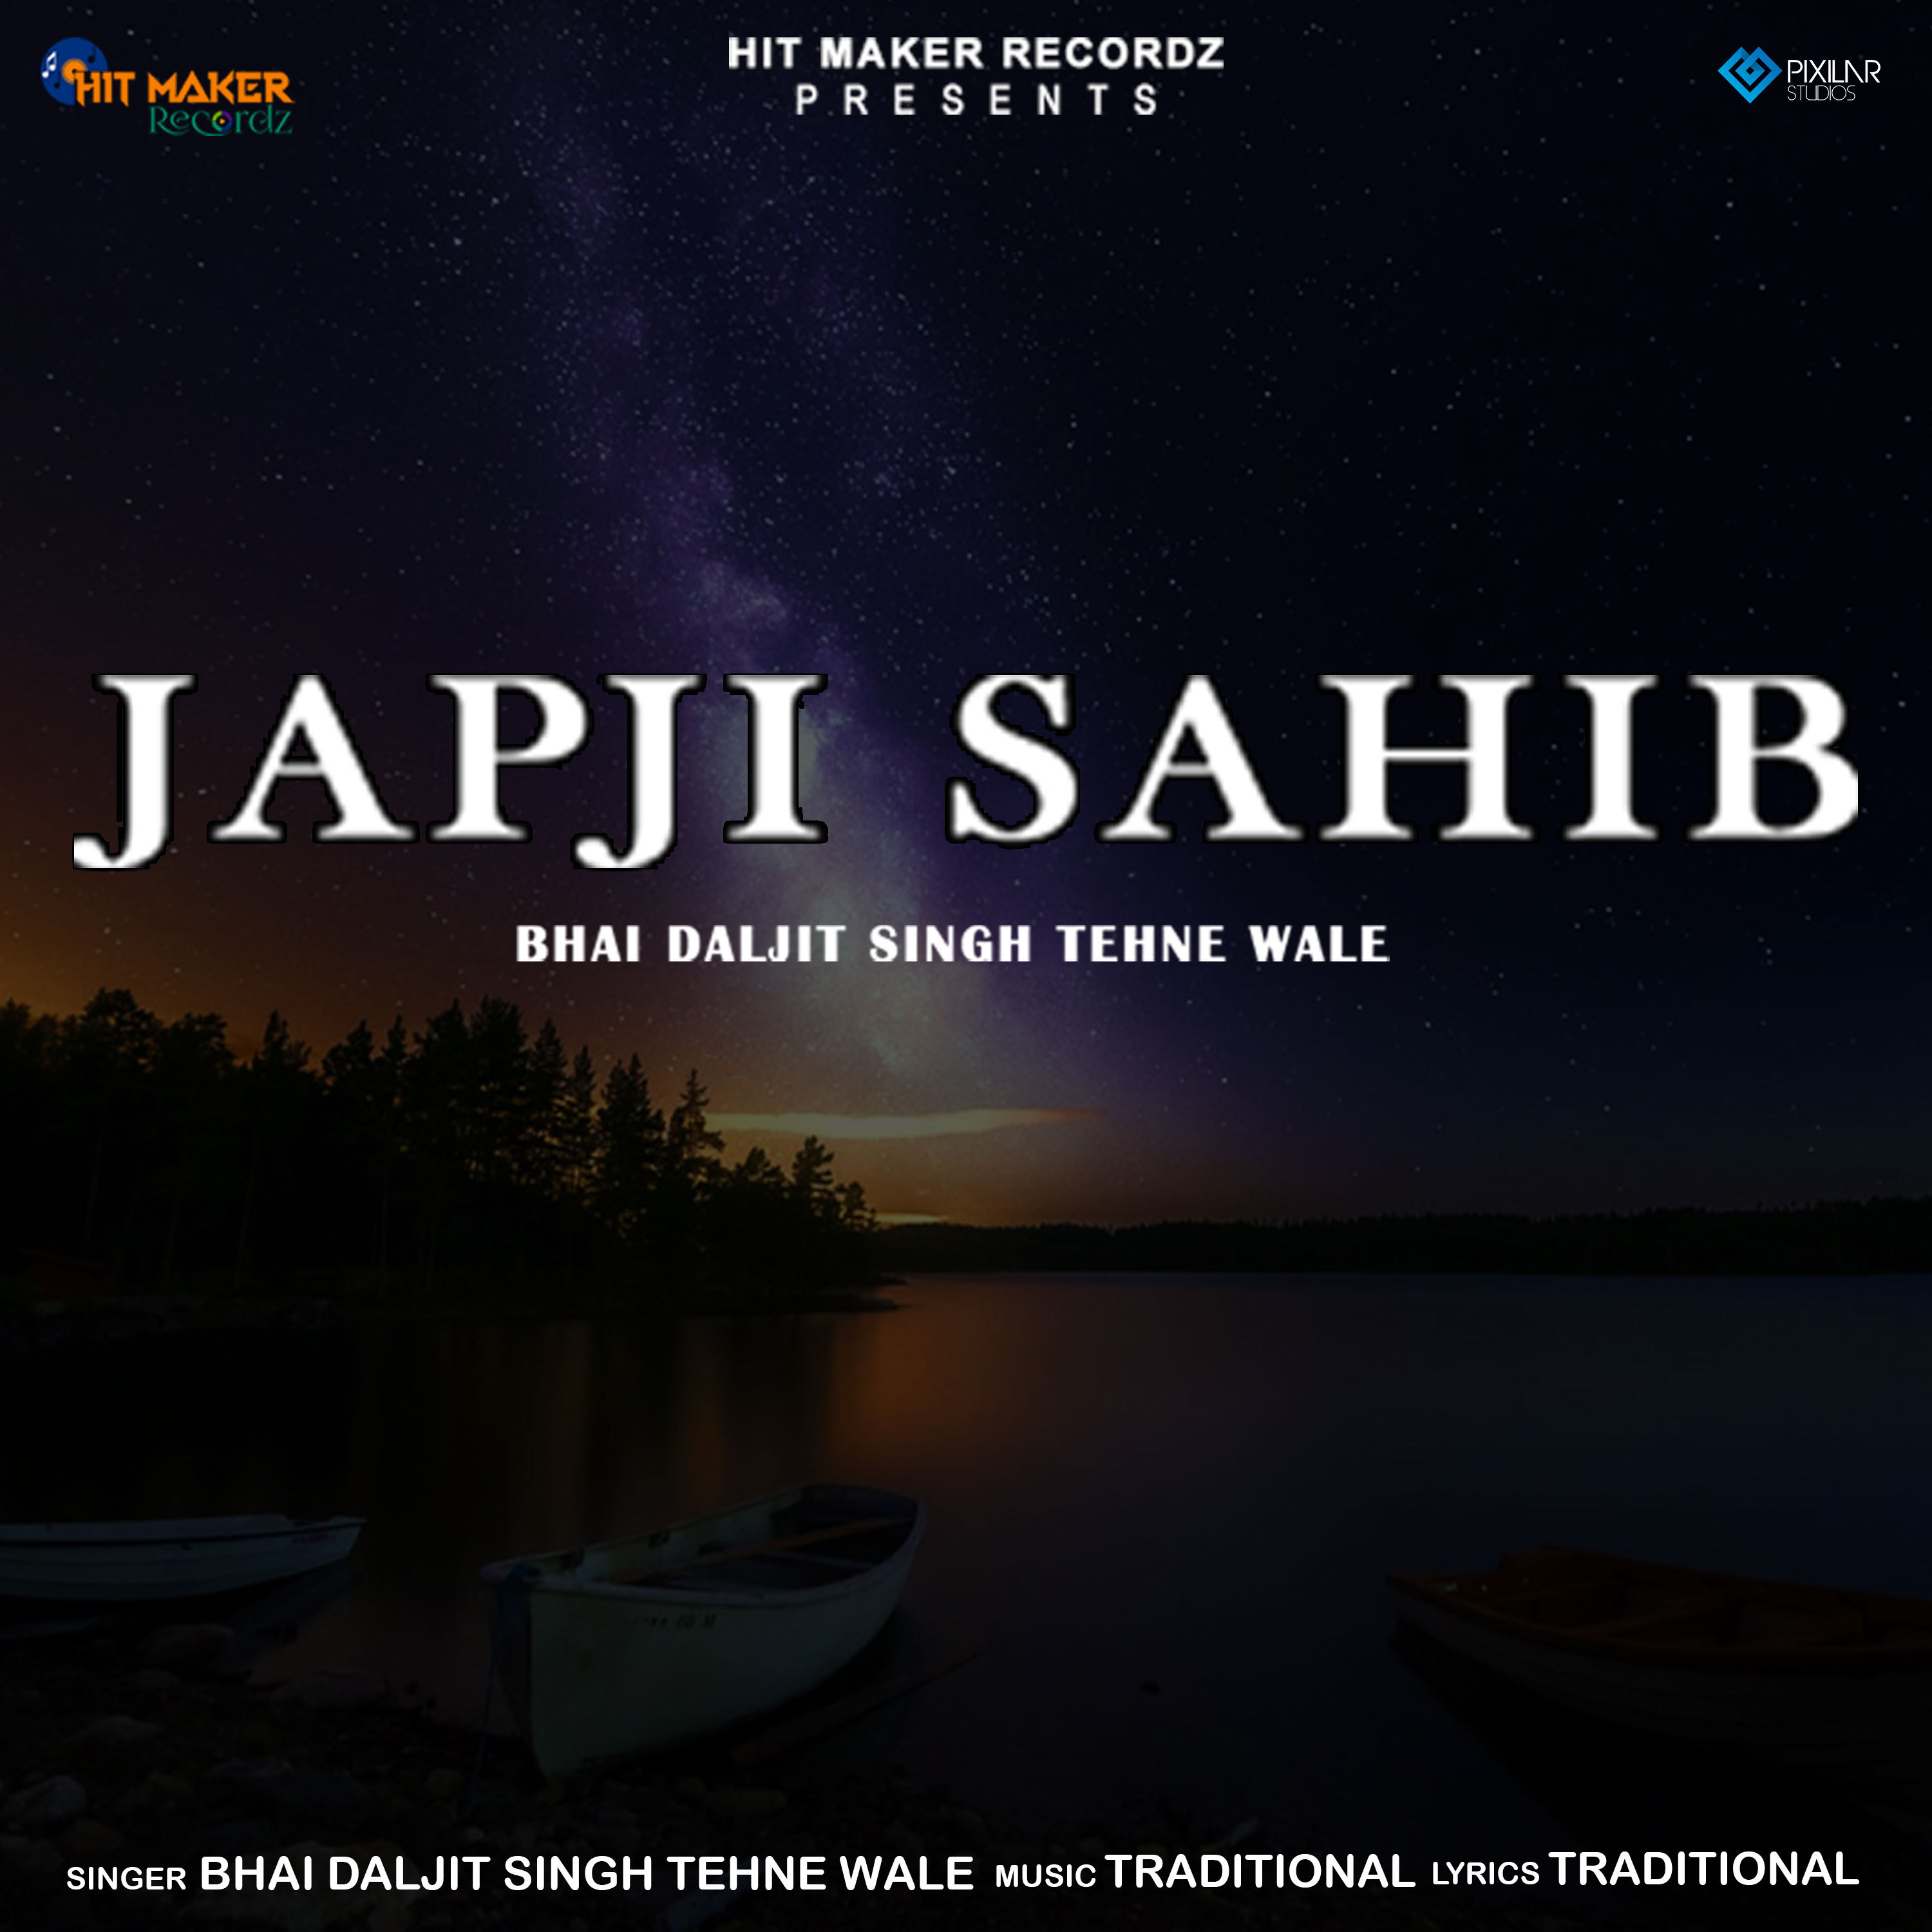 Japji sahib lyrics